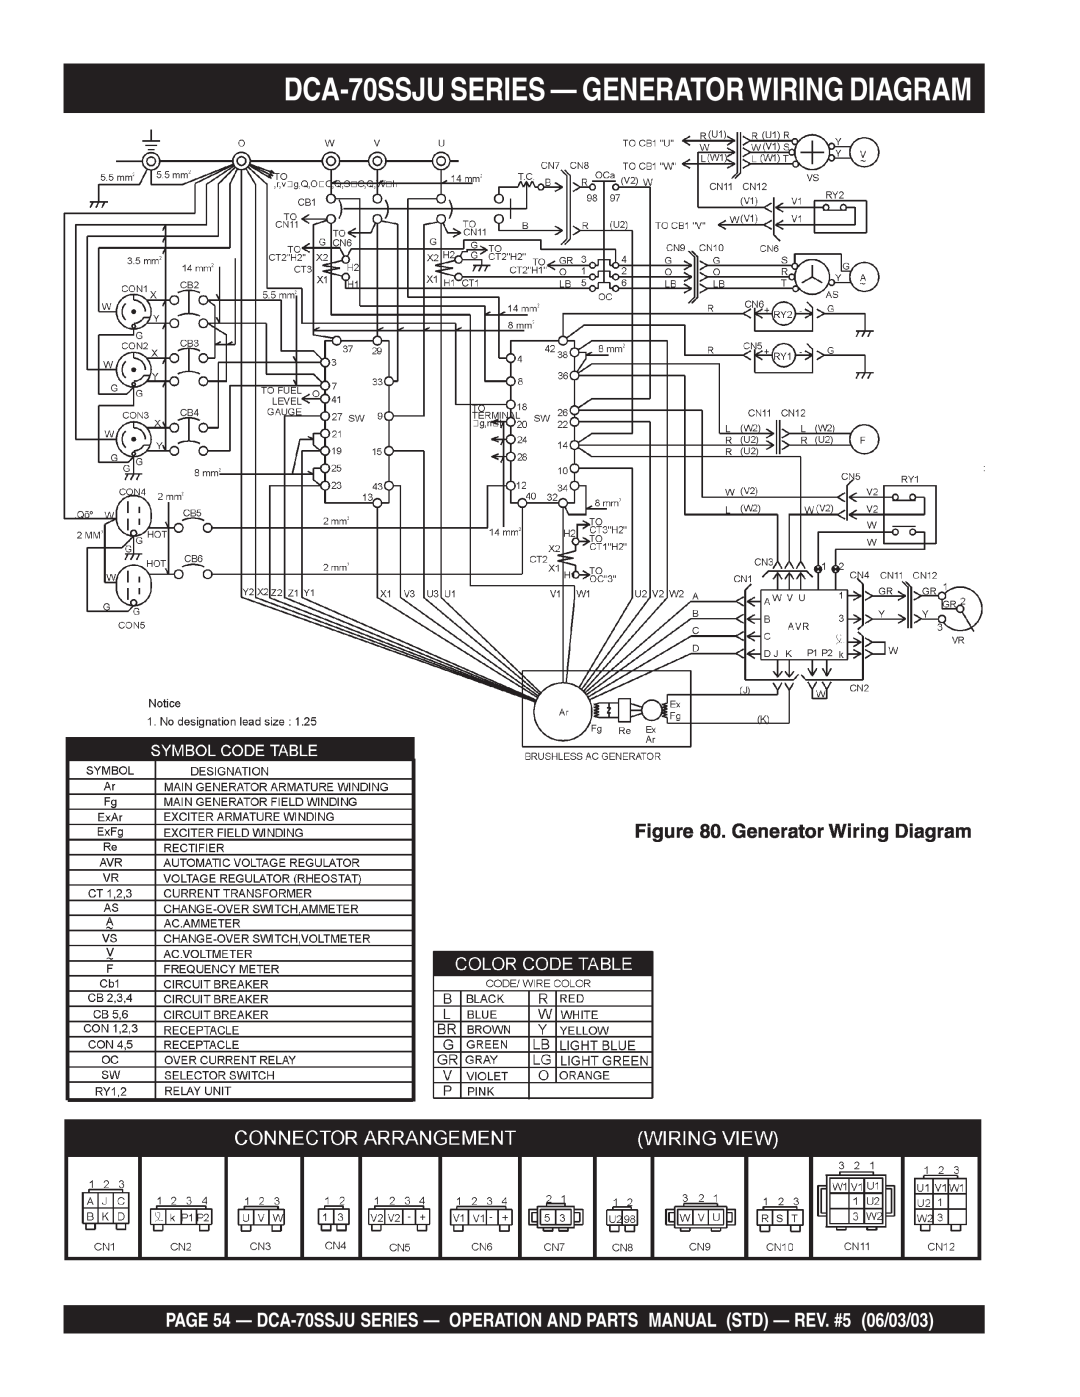 Multiquip operation manual DCA-70SSJUSERIES — GENERATORWIRING DIAGRAM, Generator Wiring Diagram 